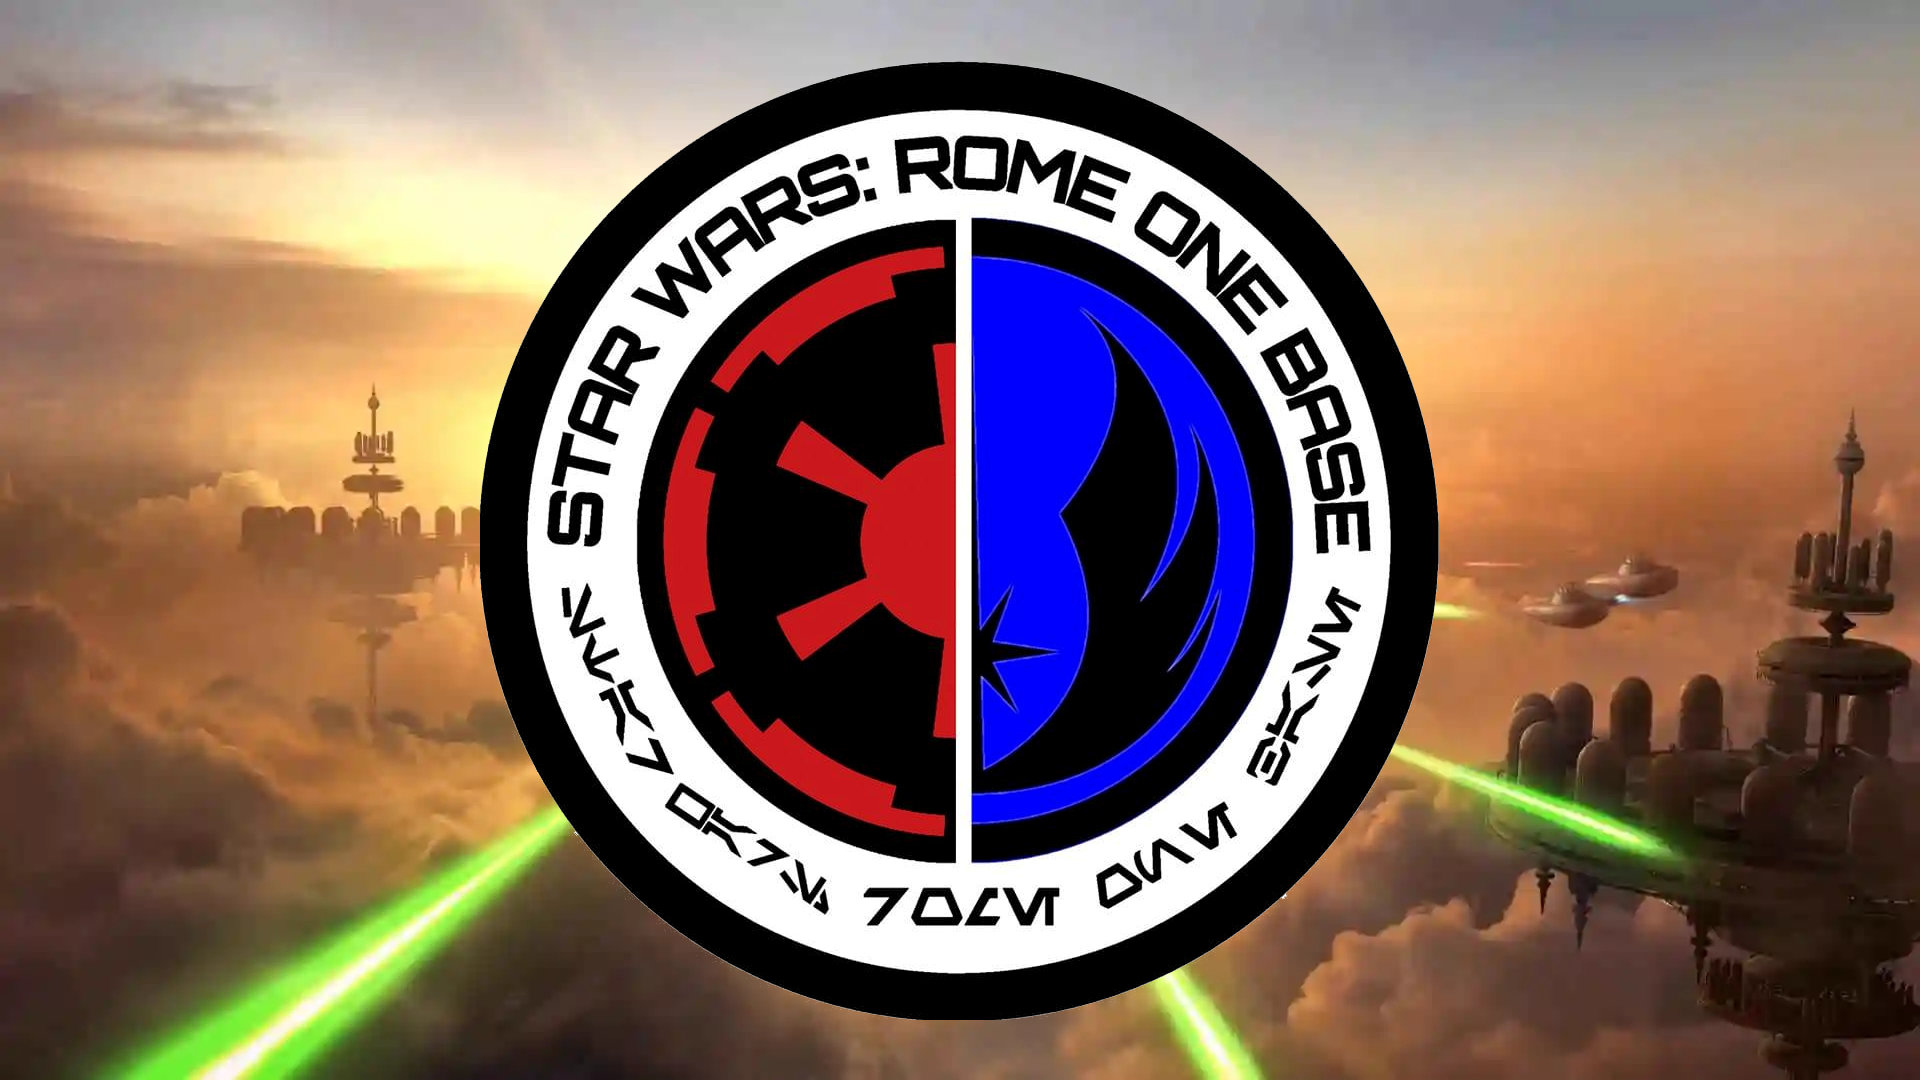 Star Wars: Rome One Base … da una capitale lontana lontana